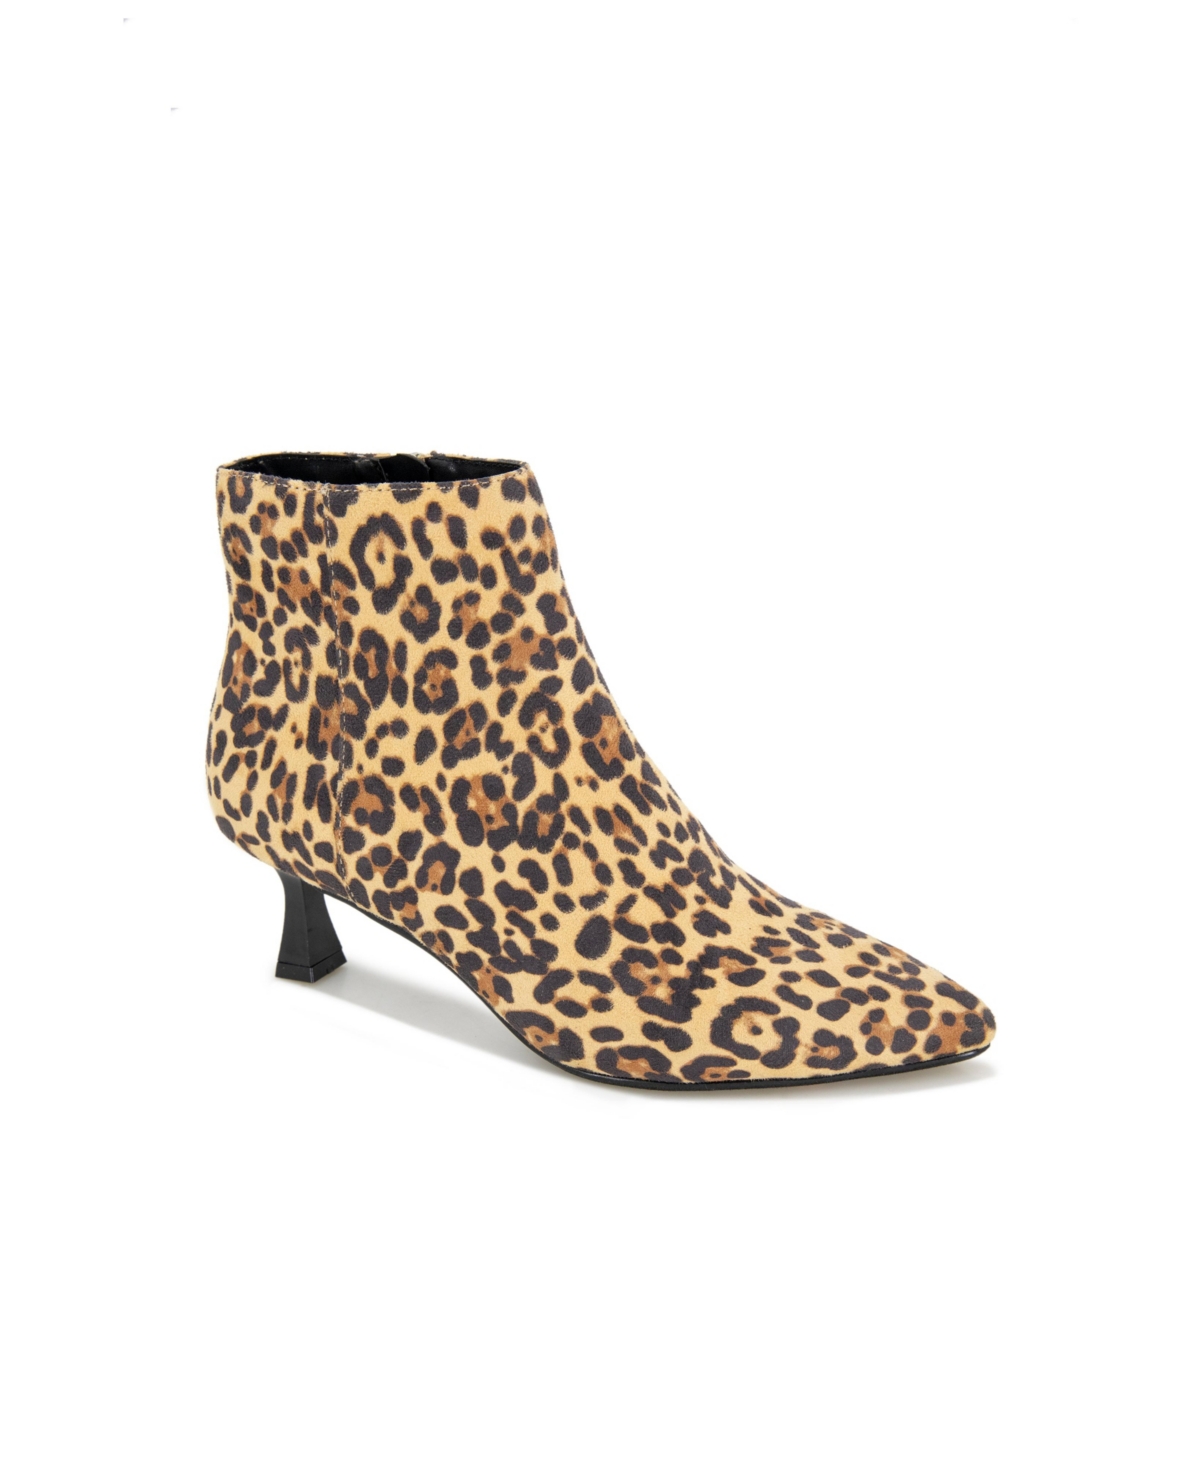 Women's Bexx Kitten Heel Booties - Leopard